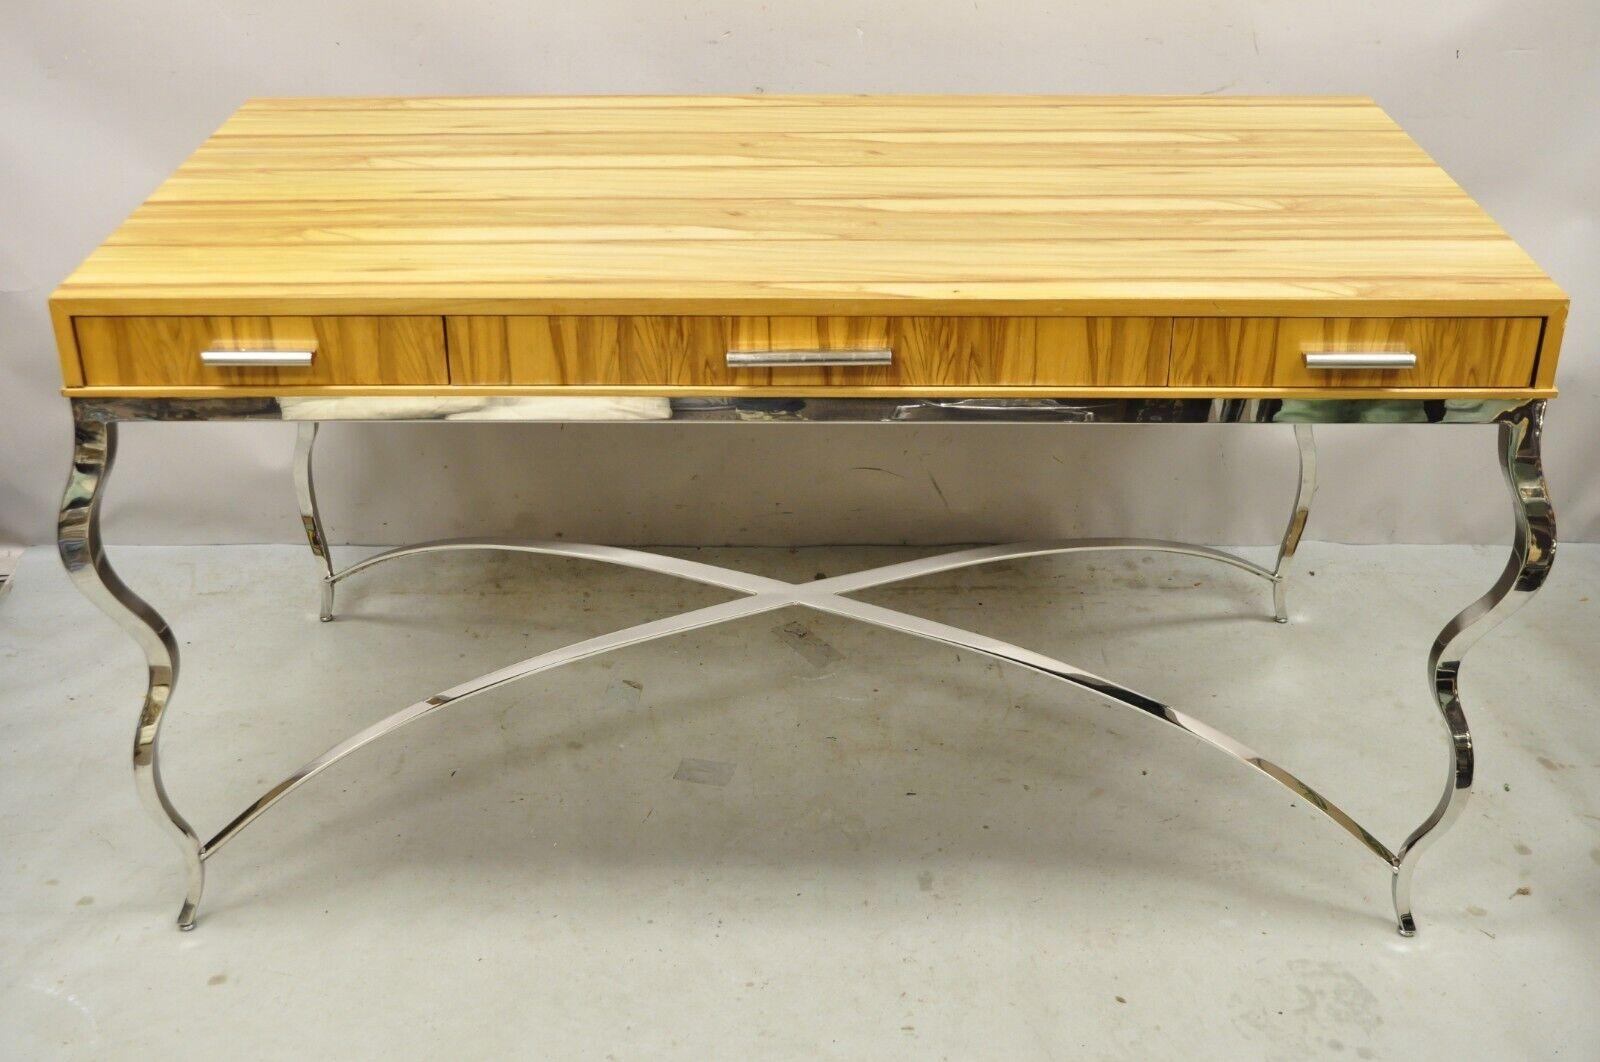 Century Furniture Modern Chrome and Zebra Wood Metal Base Desk Table 849-761. Cet article comporte 3 tiroirs, une étiquette d'origine, une base sculpturale en métal, un beau grain de bois stratifié, un style et une forme remarquables. Circa 21ème